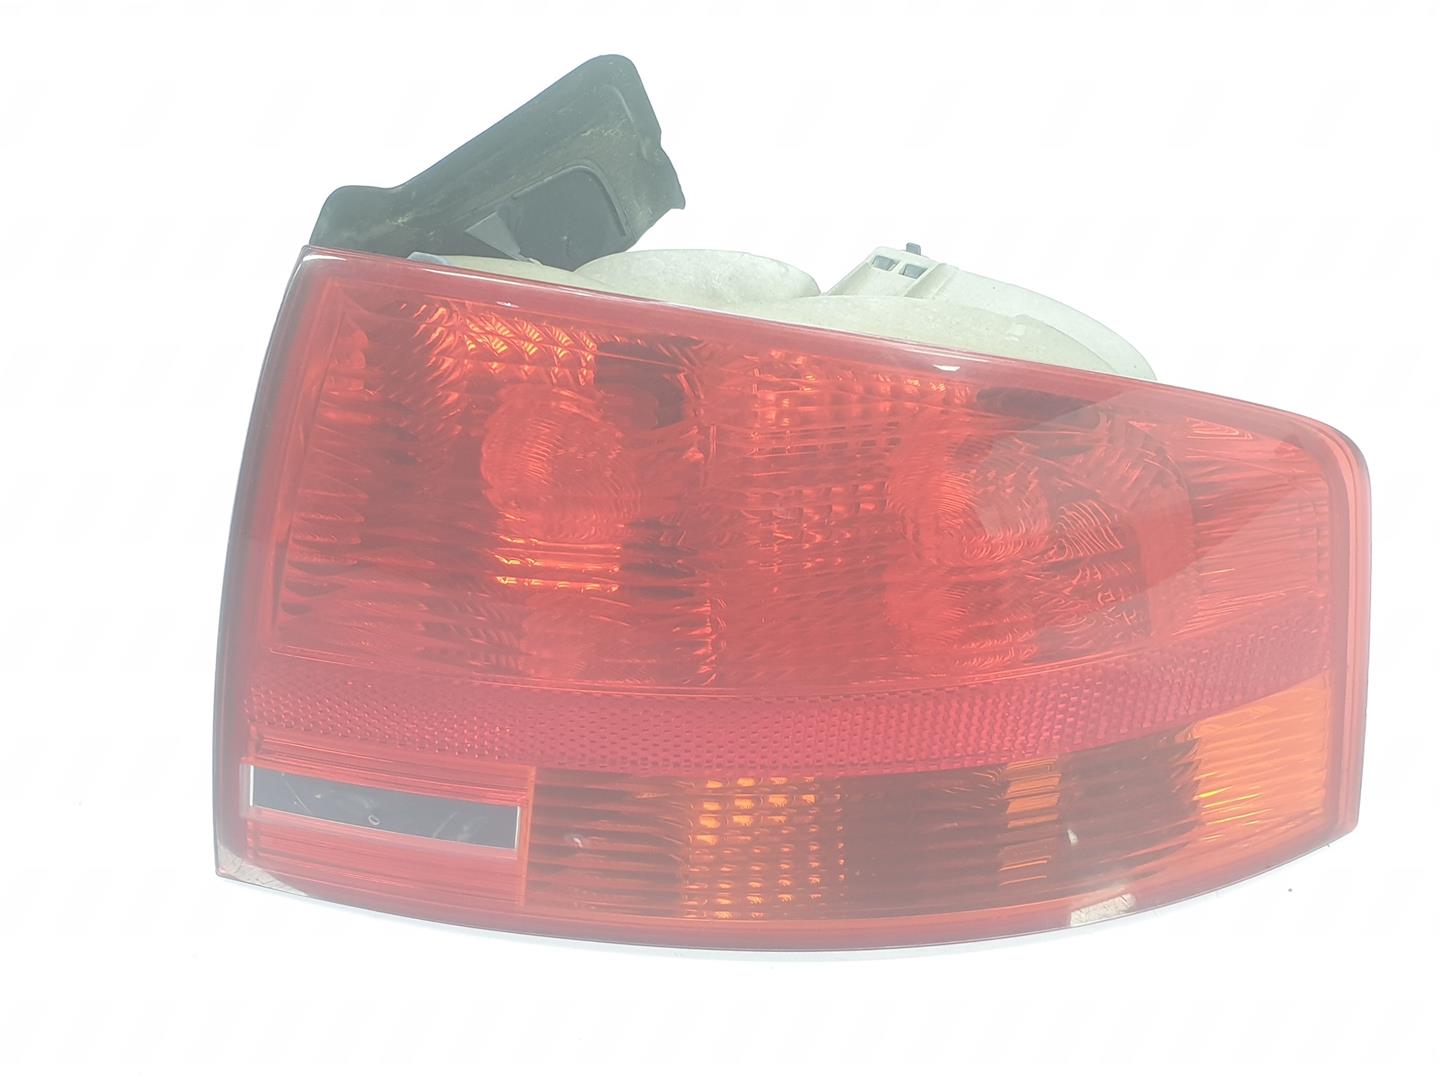 AUDI A4 B6/8E (2000-2005) Rear Right Taillight Lamp 8E5945096, 8E5945096 19816953